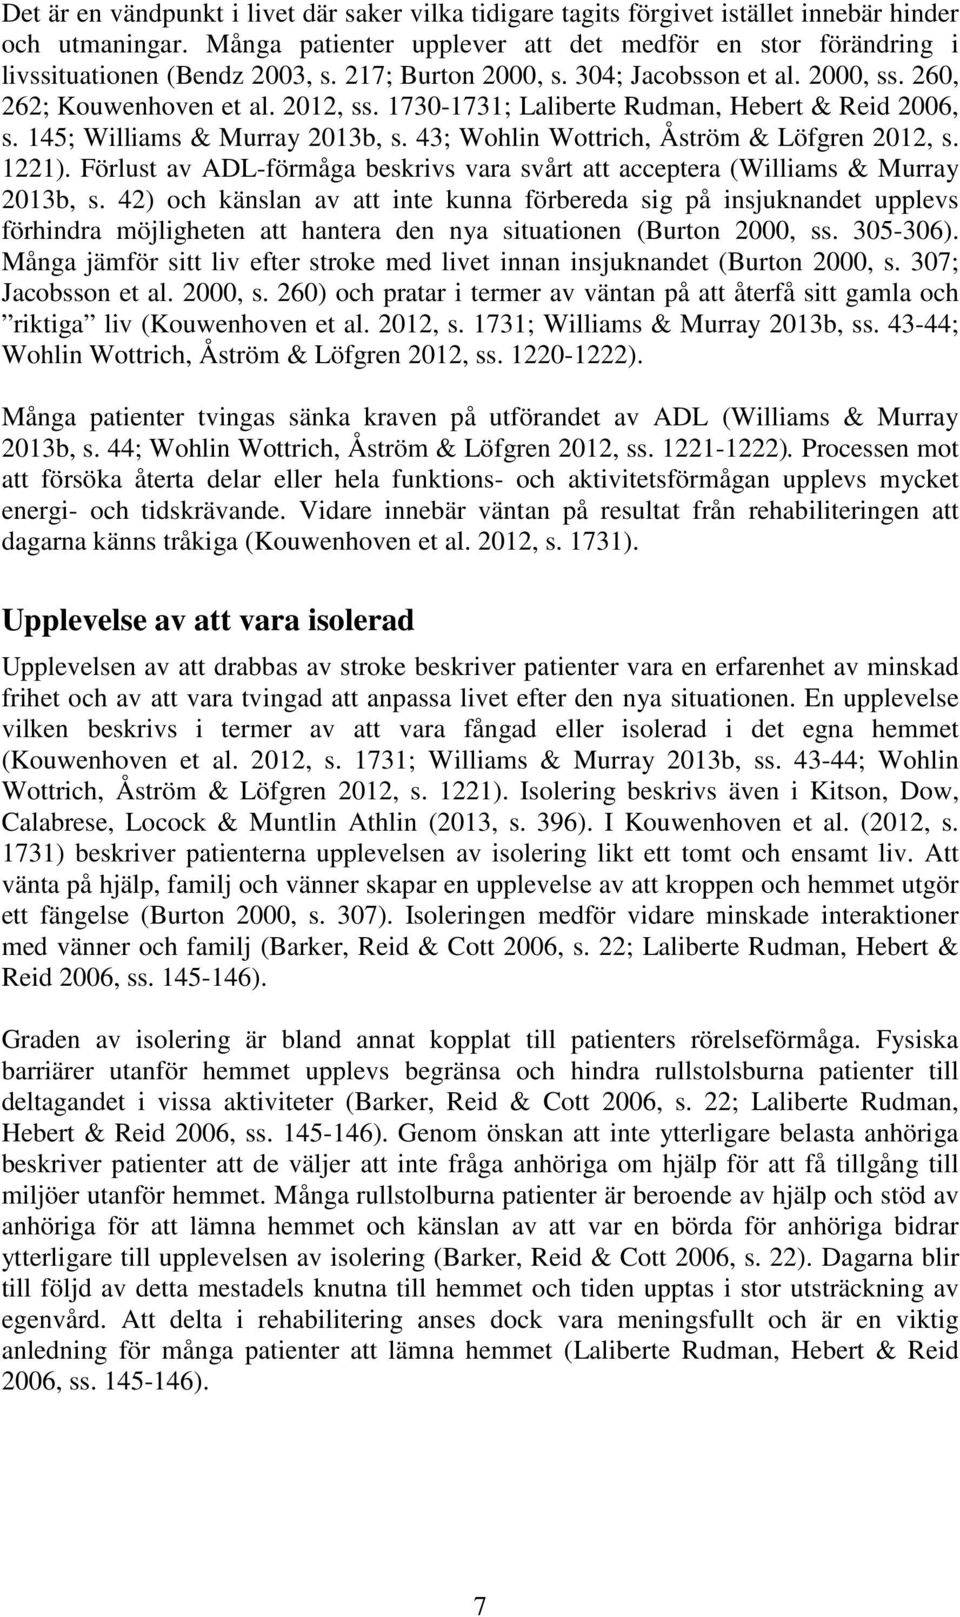 1730-1731; Laliberte Rudman, Hebert & Reid 2006, s. 145; Williams & Murray 2013b, s. 43; Wohlin Wottrich, Åström & Löfgren 2012, s. 1221).